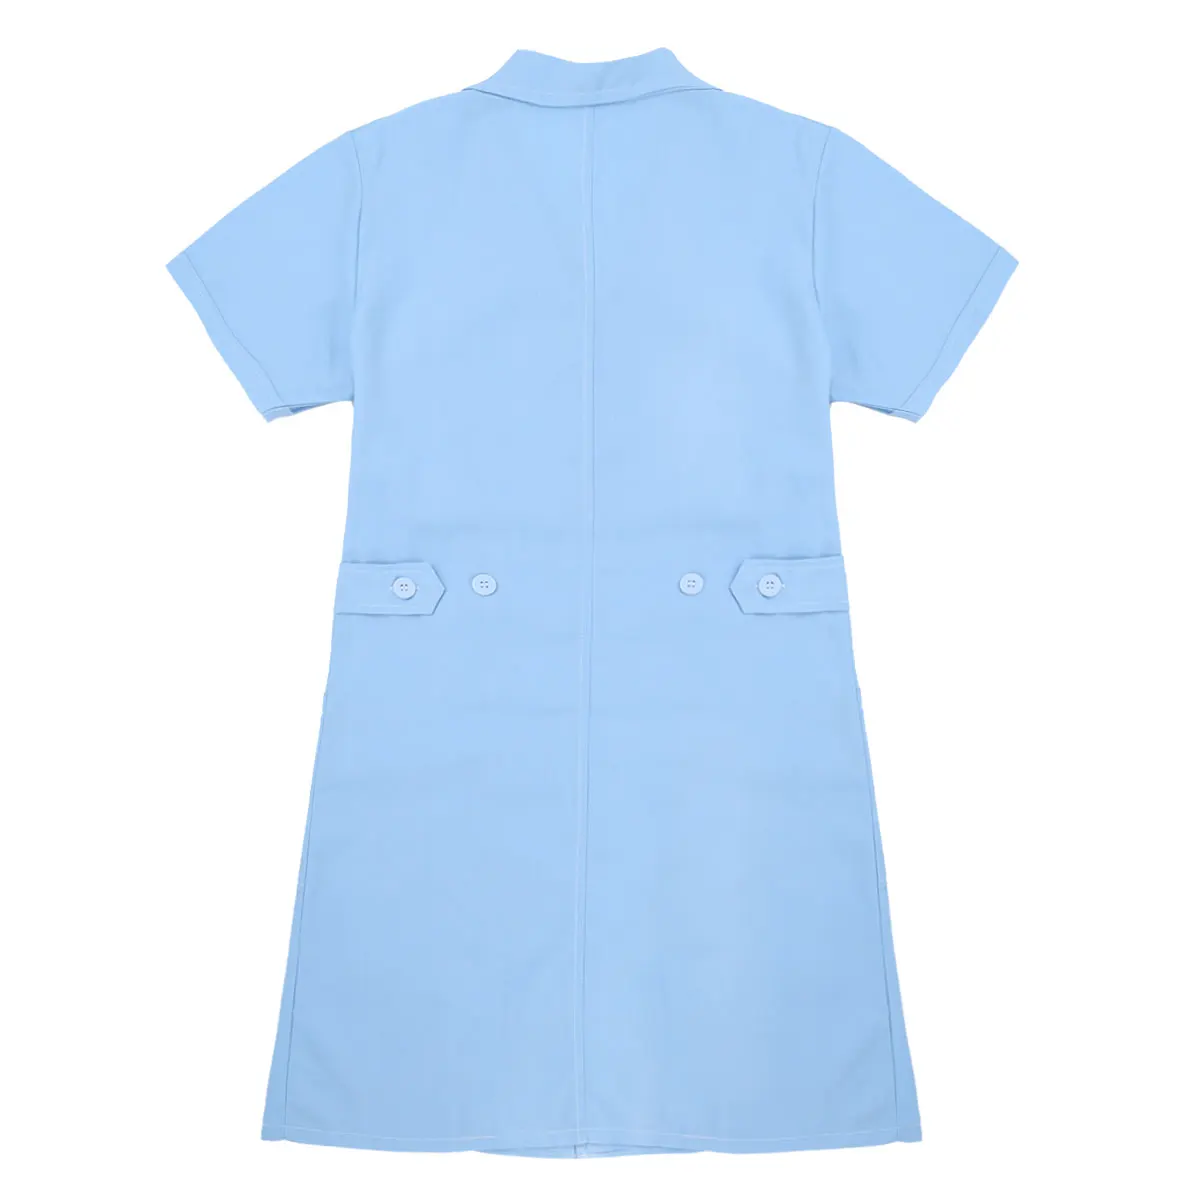 Новая мода короткий рукав стоячий воротник женское медицинское пальто униформа медицинская лабораторная куртка больница тонкая розовая синяя белая форма медсестры